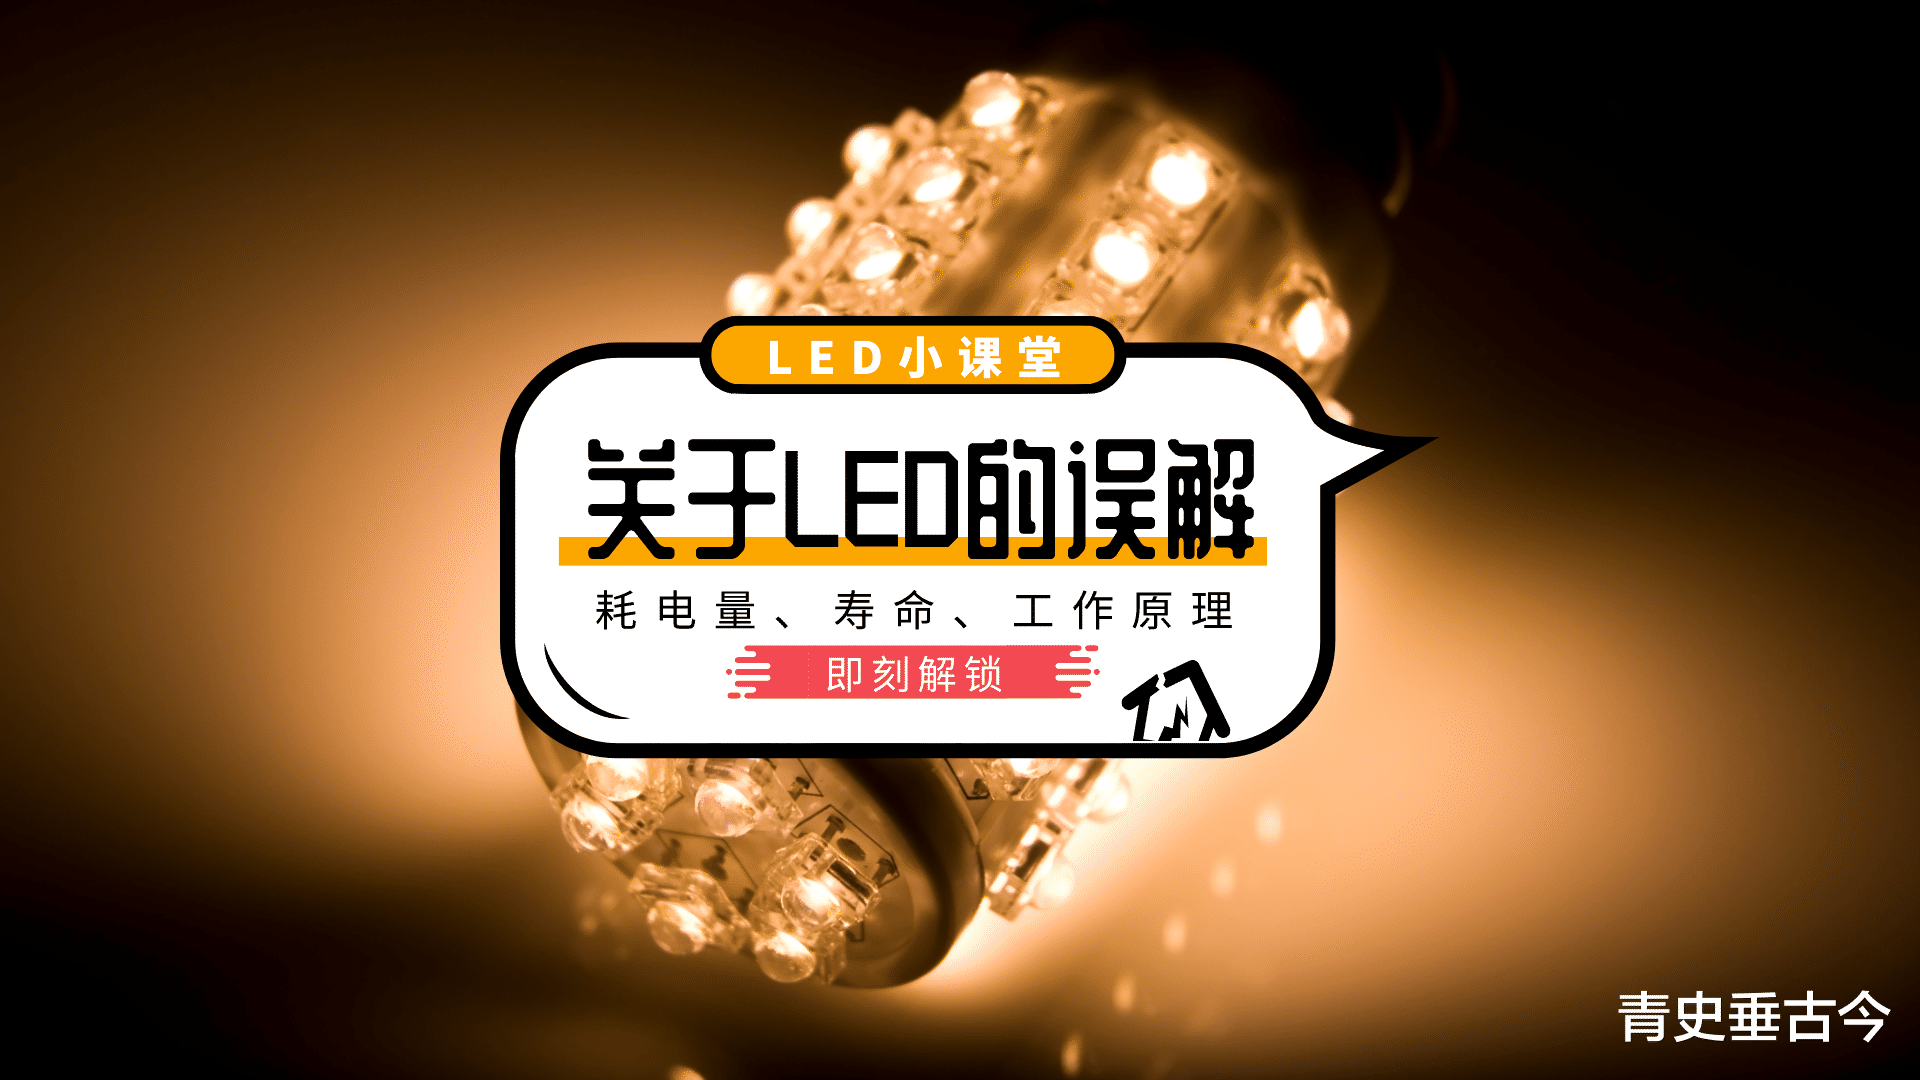 LED灯“寿命短还费电”，为什么商家却口口声声说它是节能产品？